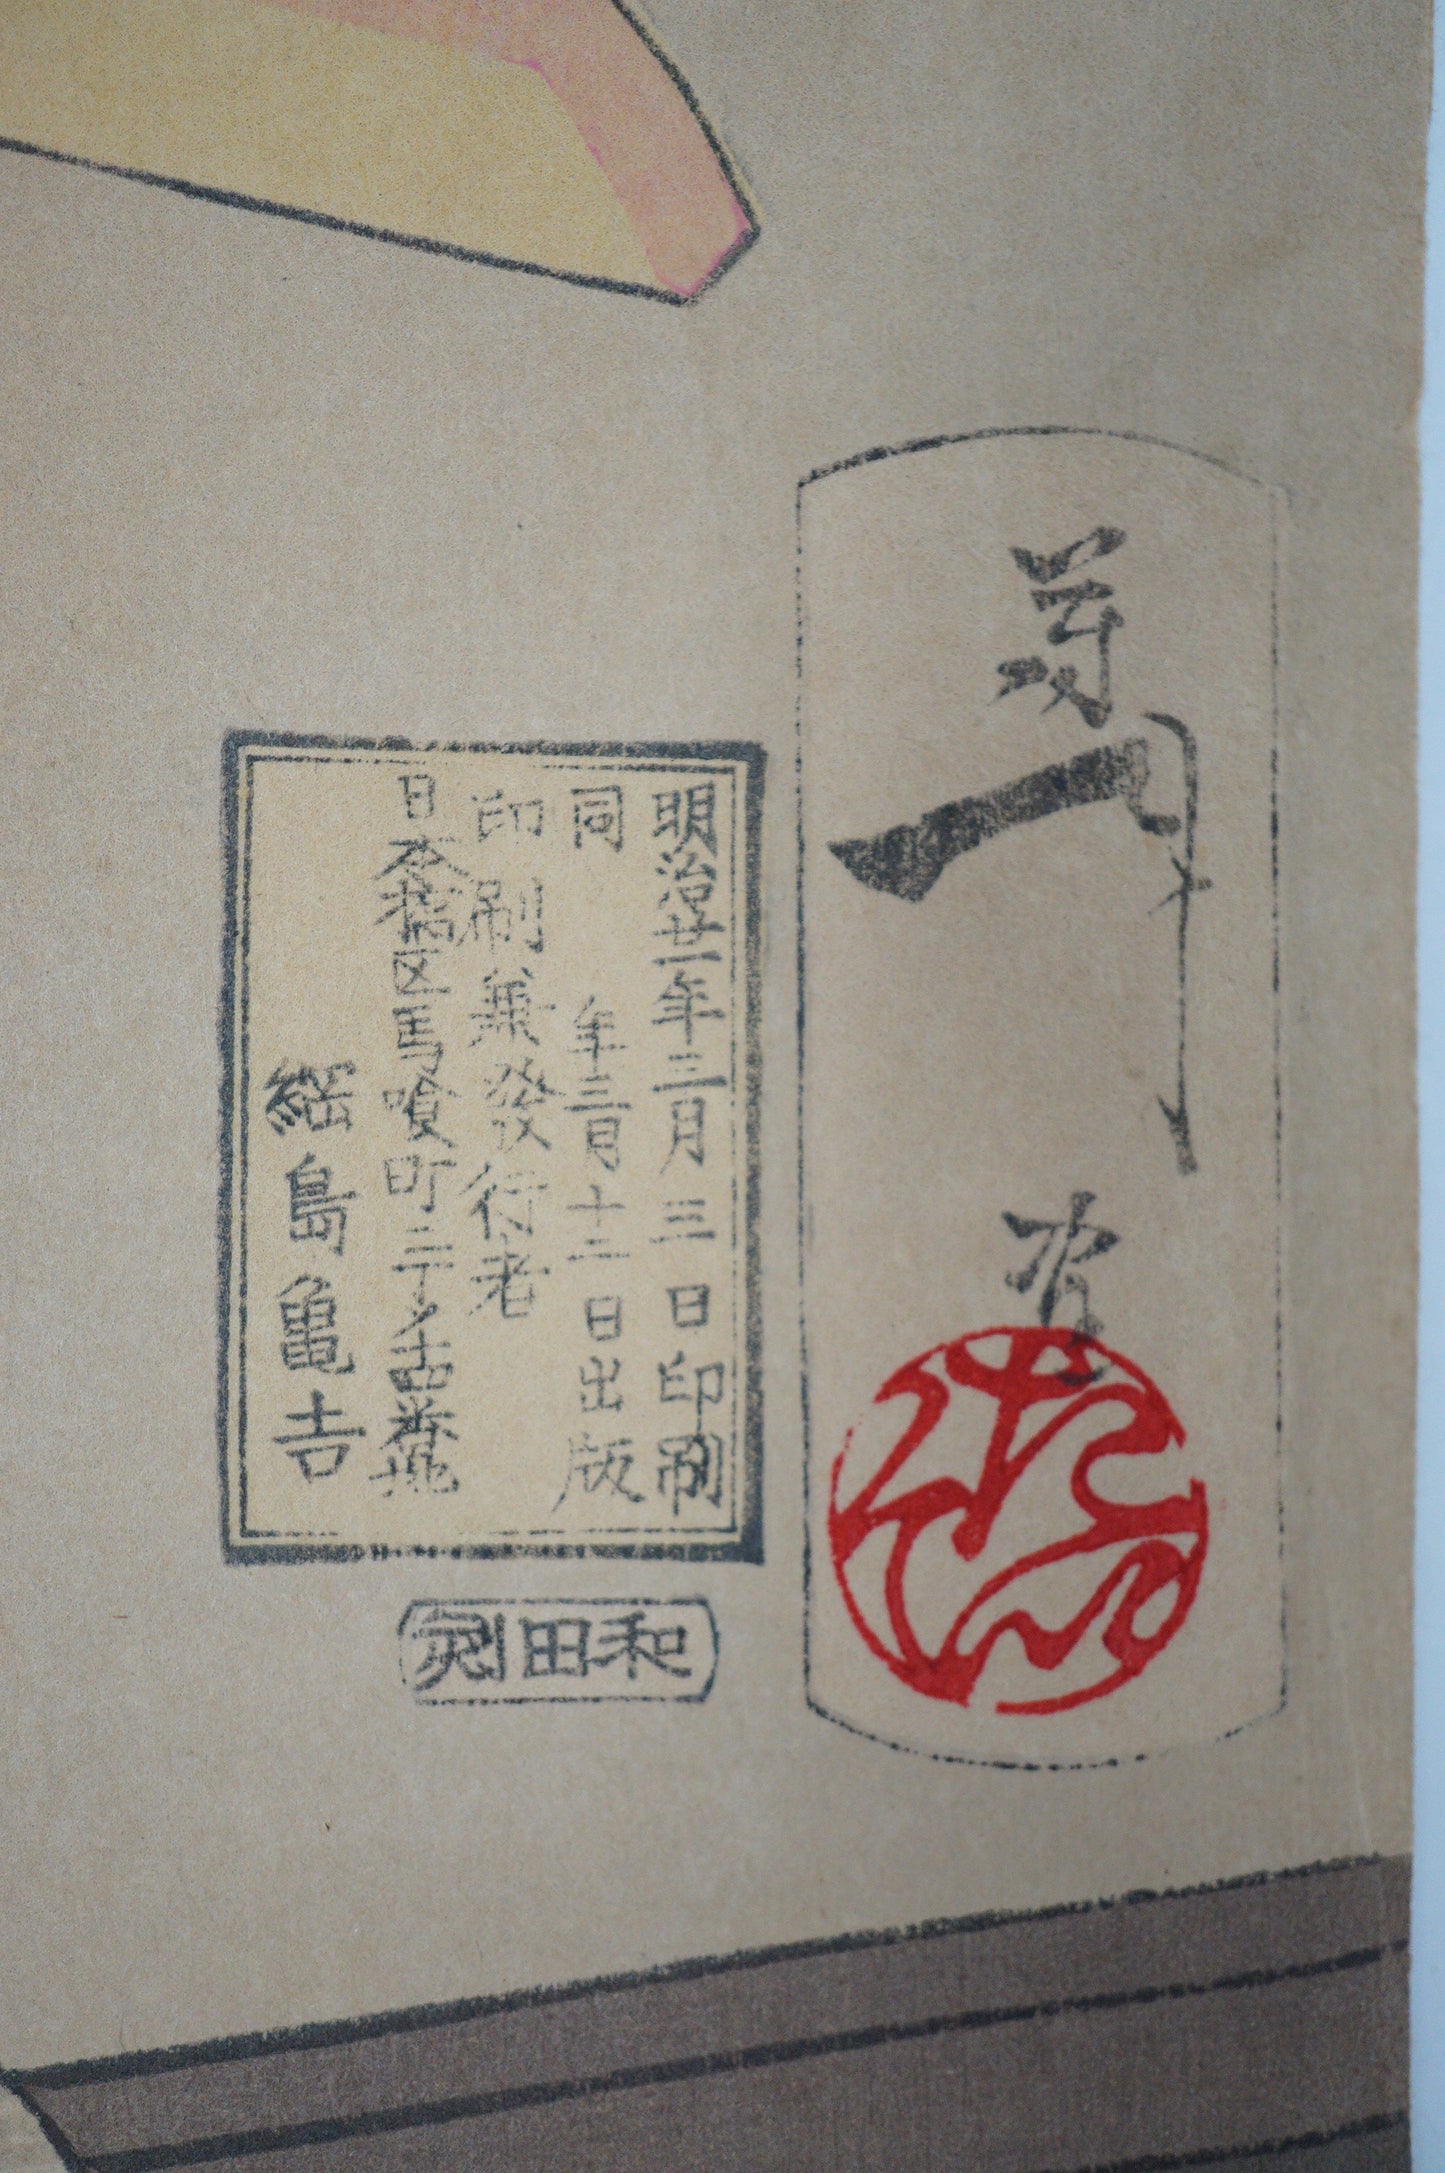 Rare Yoshitoshi Woodblock Print Original "Looking Delicious" from Japan 0310E10